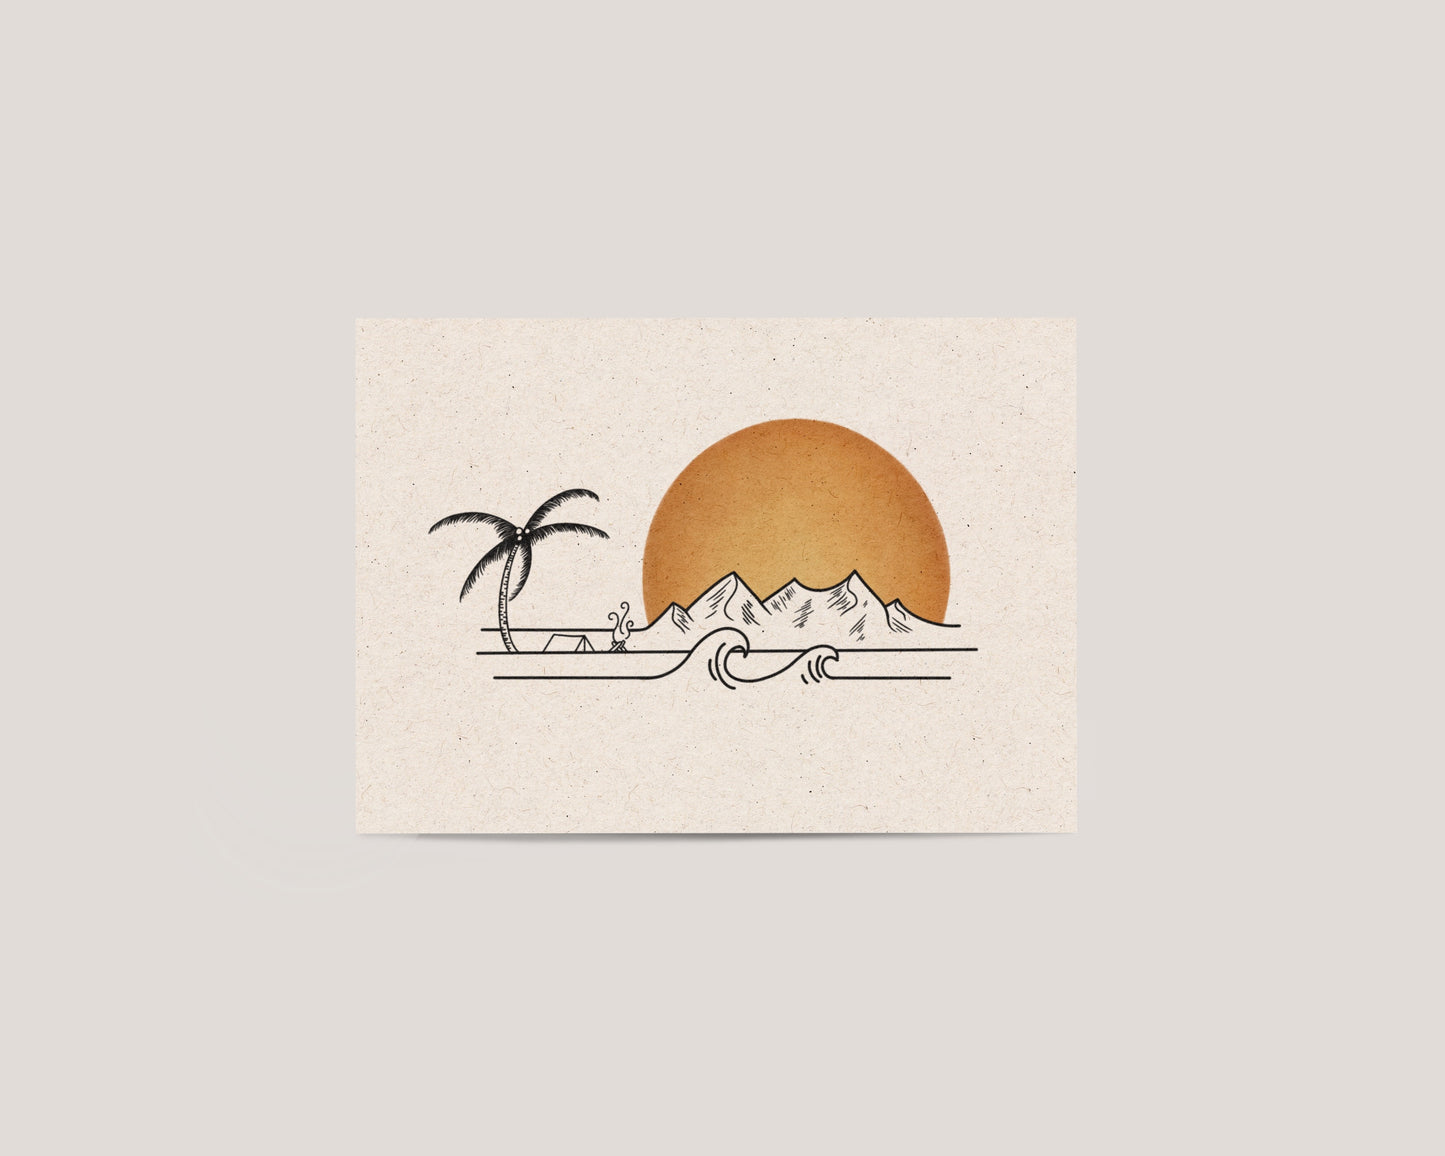 Sunset Mountains - Art print - A5